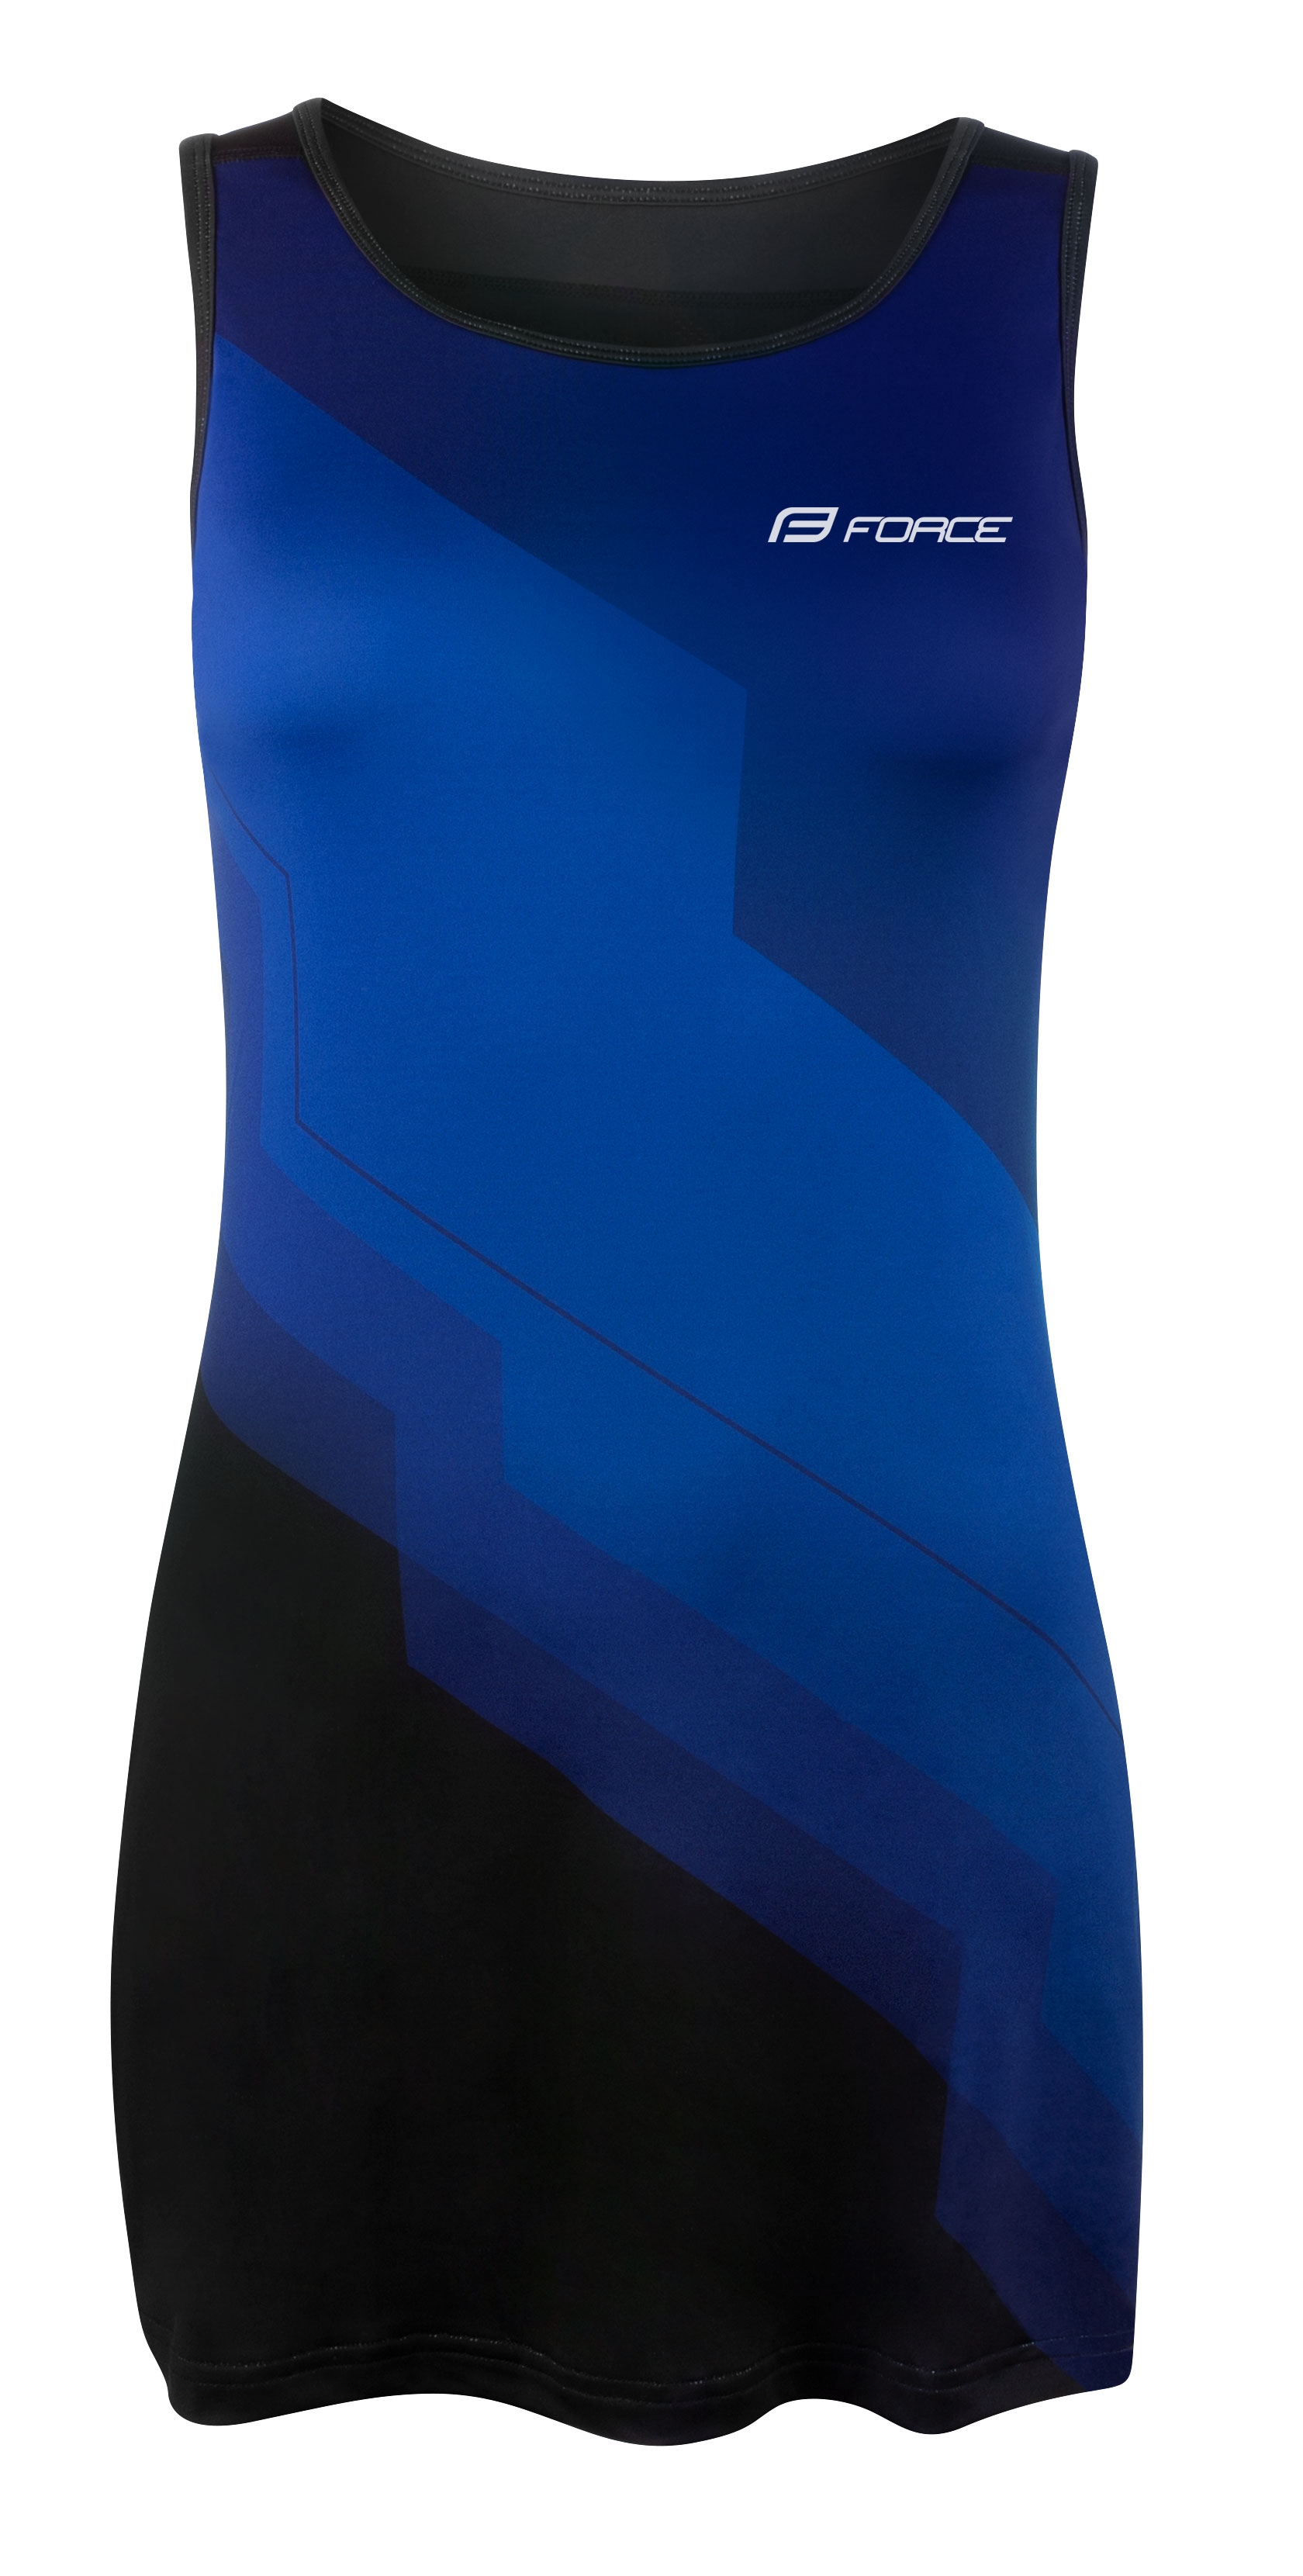 šaty sportovní FORCE ABBY, modro-černé XL